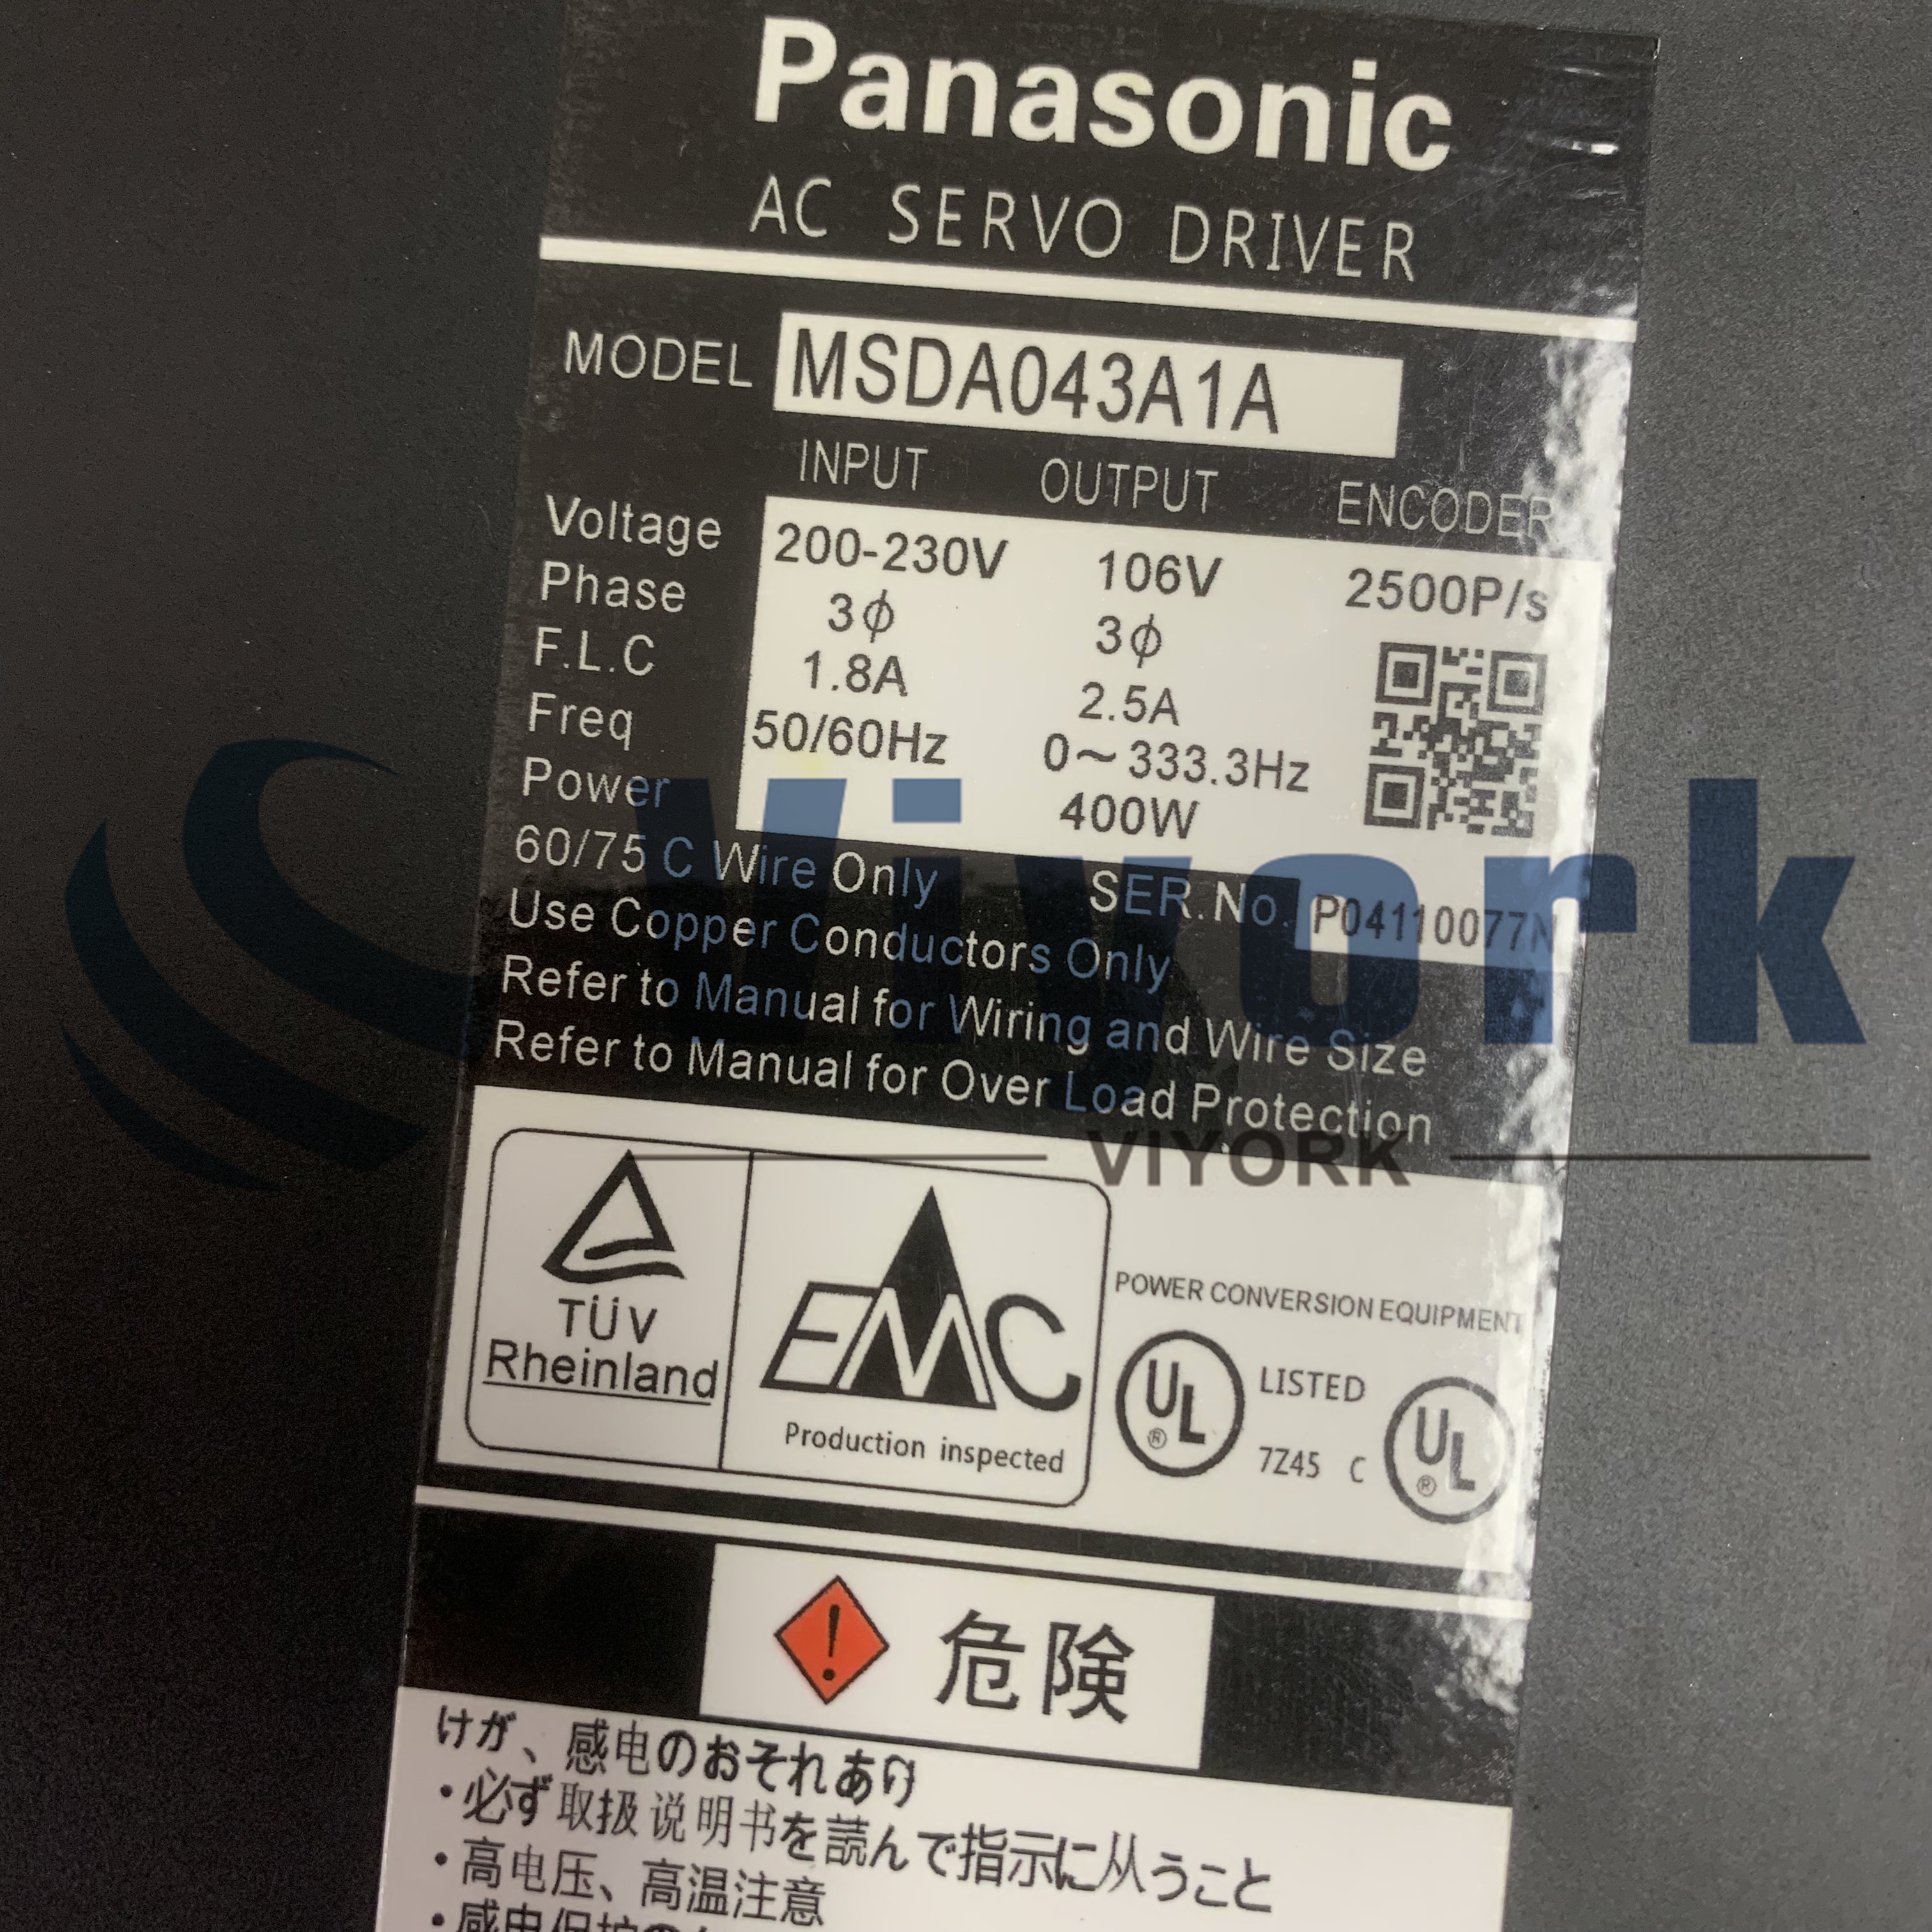 Panasonic MSDA043A1A AC SERVO DRIVE 400W WITHOUT BRAKE STRAIGHT SHAFT NEW